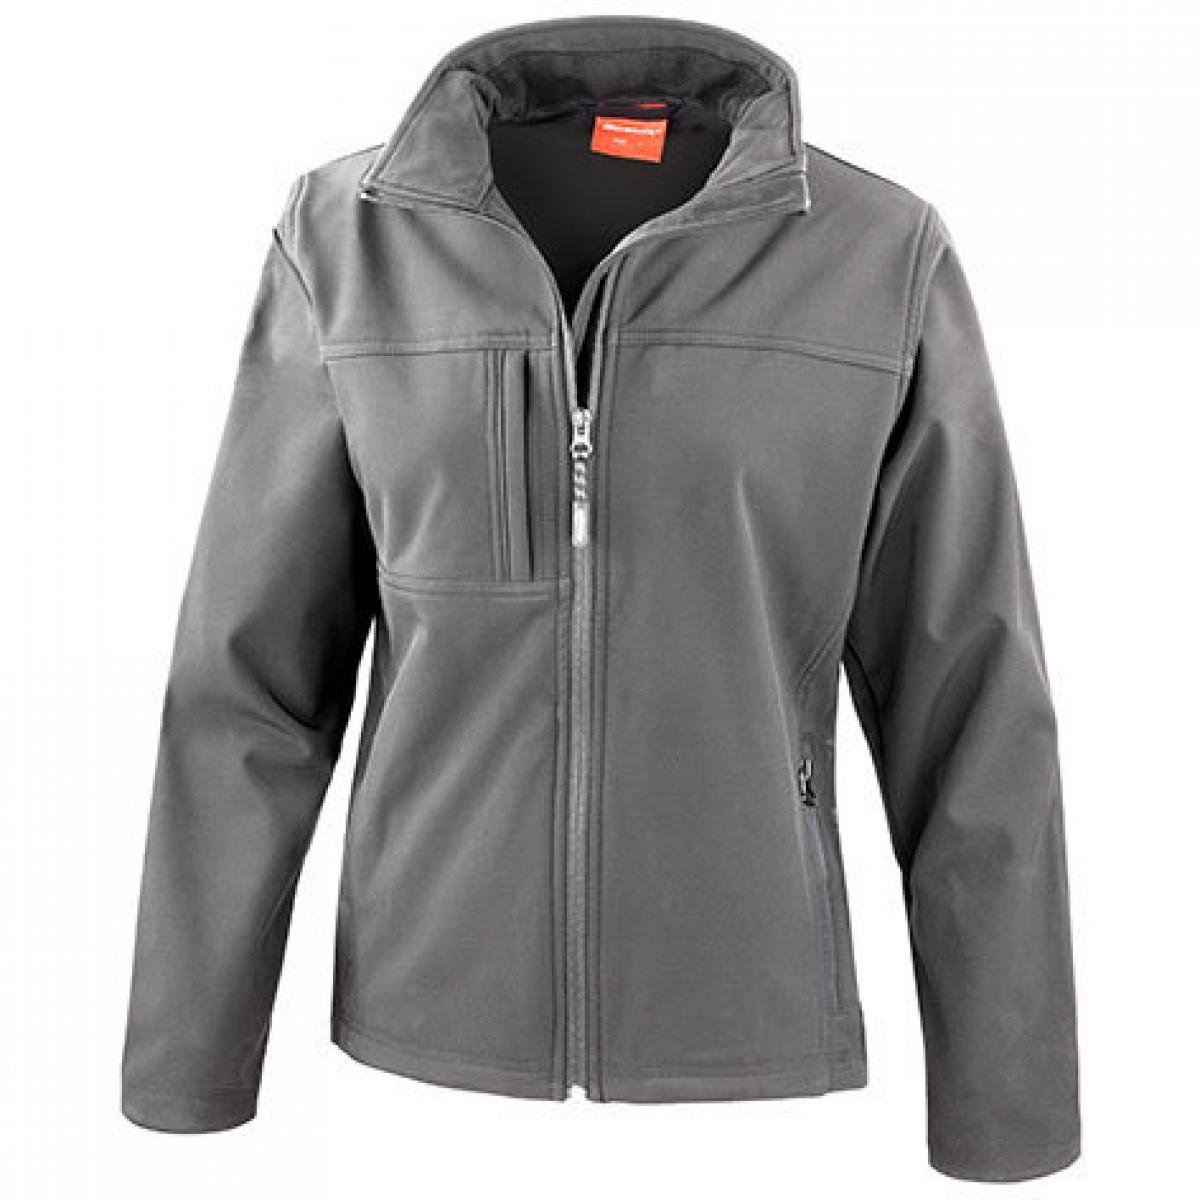 Hersteller: Result Herstellernummer: R121F Artikelbezeichnung: Ladies Classic Soft Shell Jacket Farbe: Grey